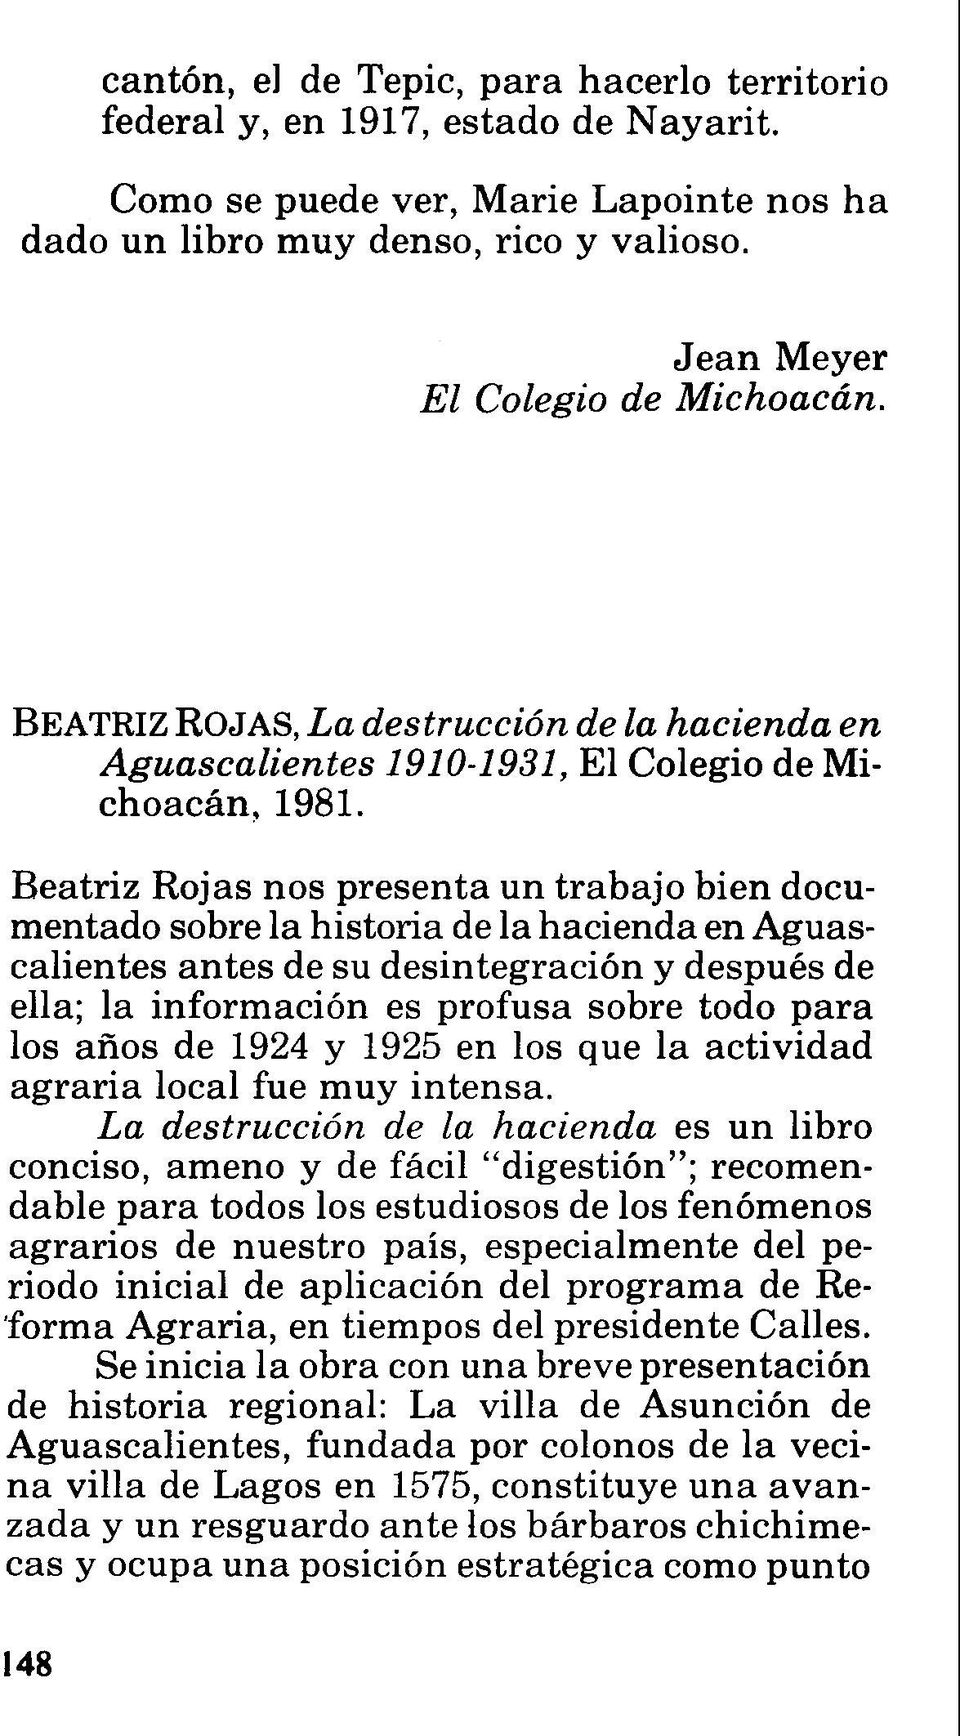 Beatriz Rojas nos presenta un trabajo bien documentado sobre la historia de la hacienda en Aguascalientes antes de su desintegración y después de ella; la información es profusa sobre todo para los